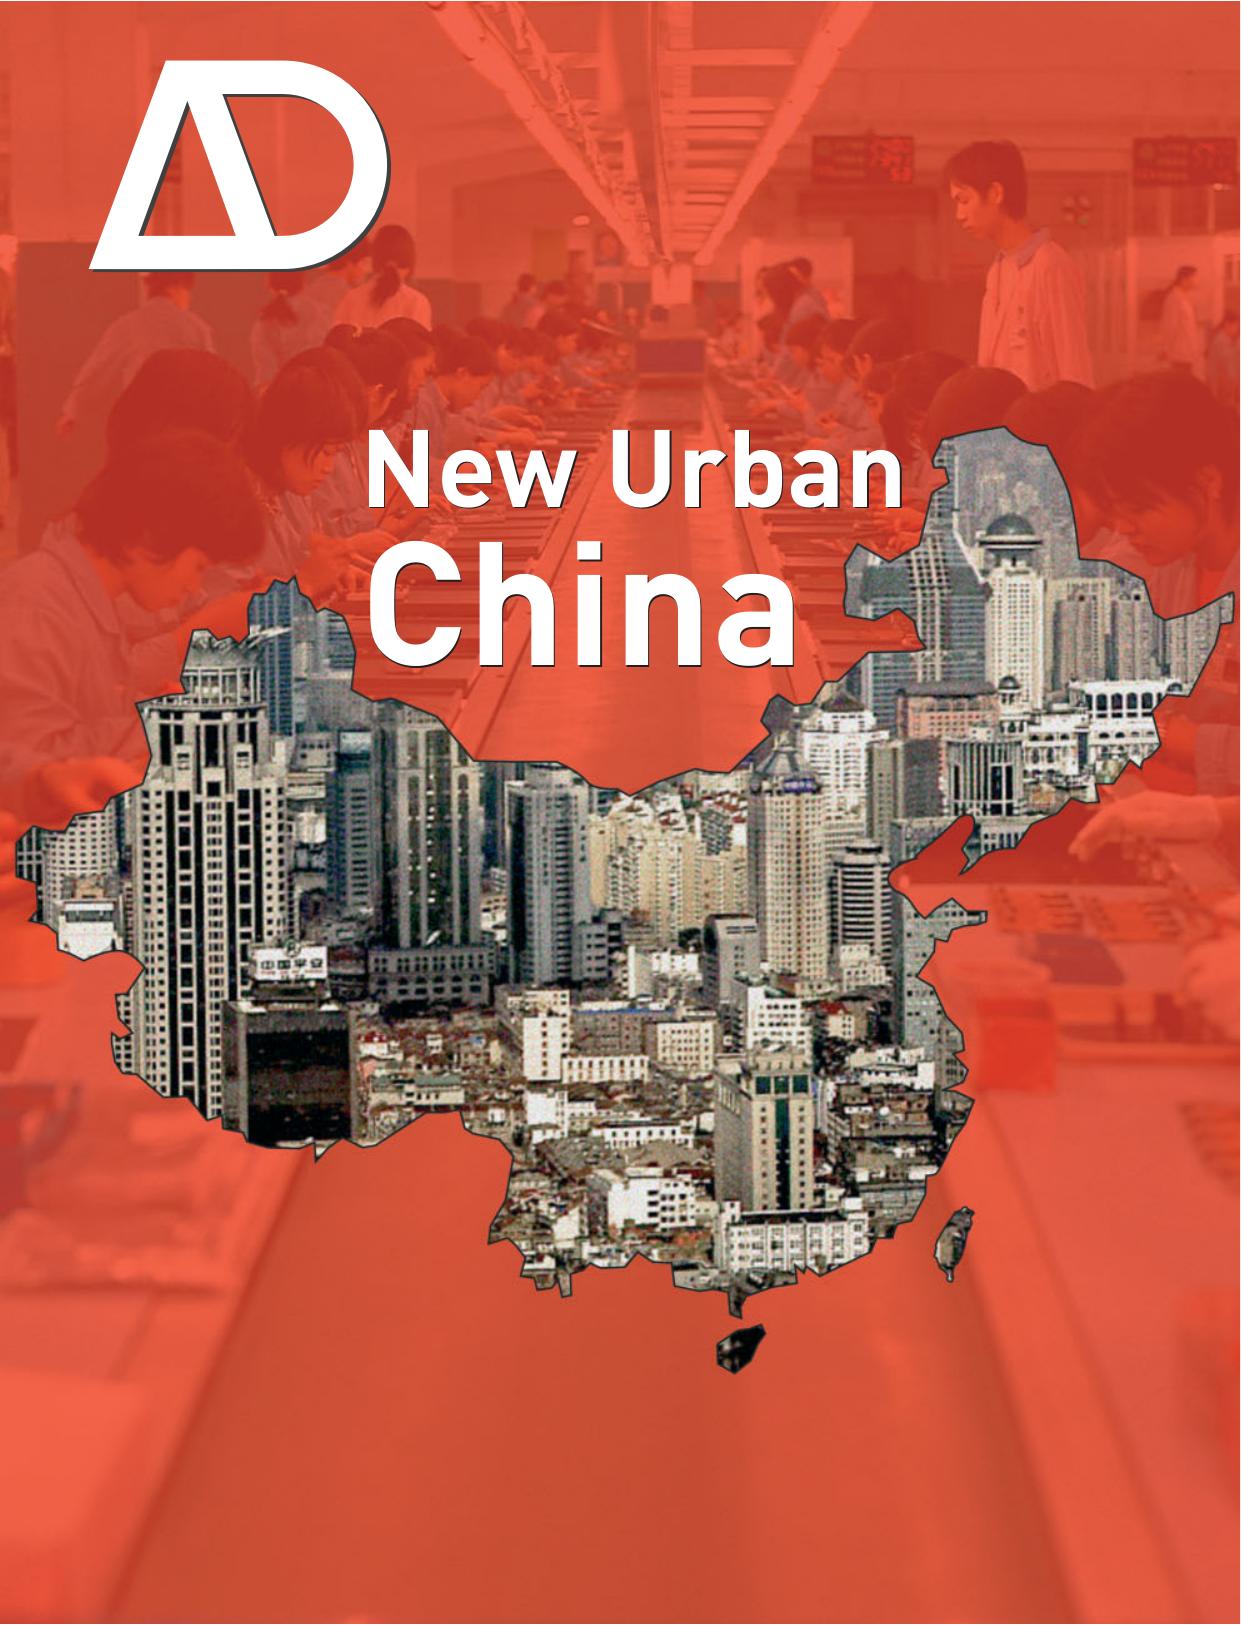 New Urban China. 2008